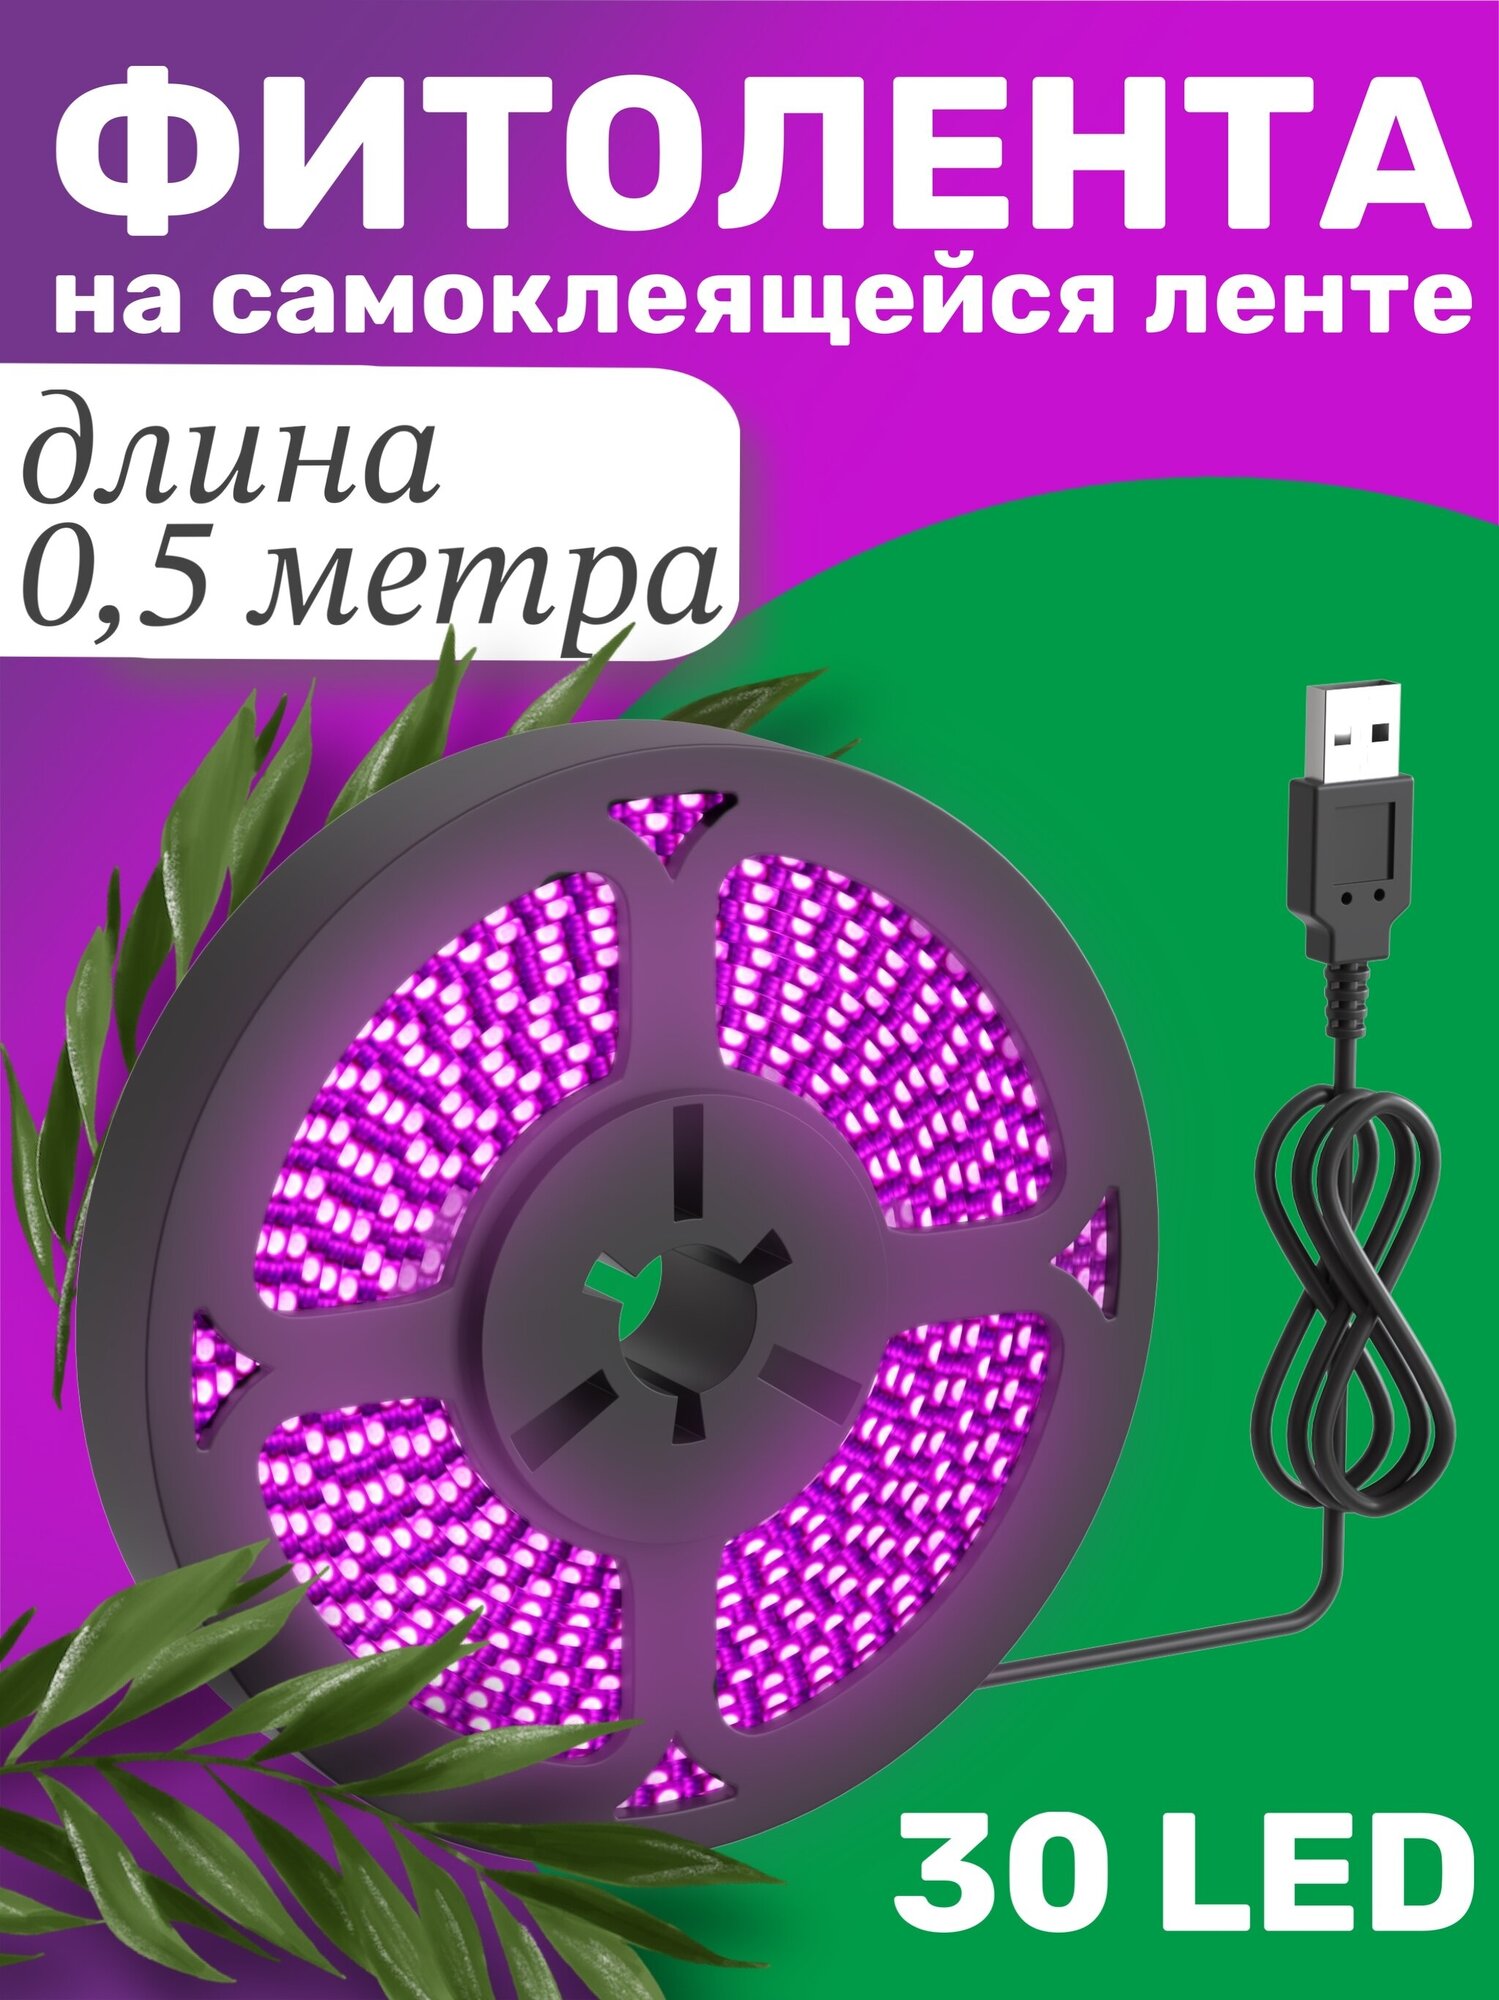 Фитолента светодиодная лента GSMIN B77 фитолампа для роста растений рассады USB (5 В, 30LED) (0,5 м)